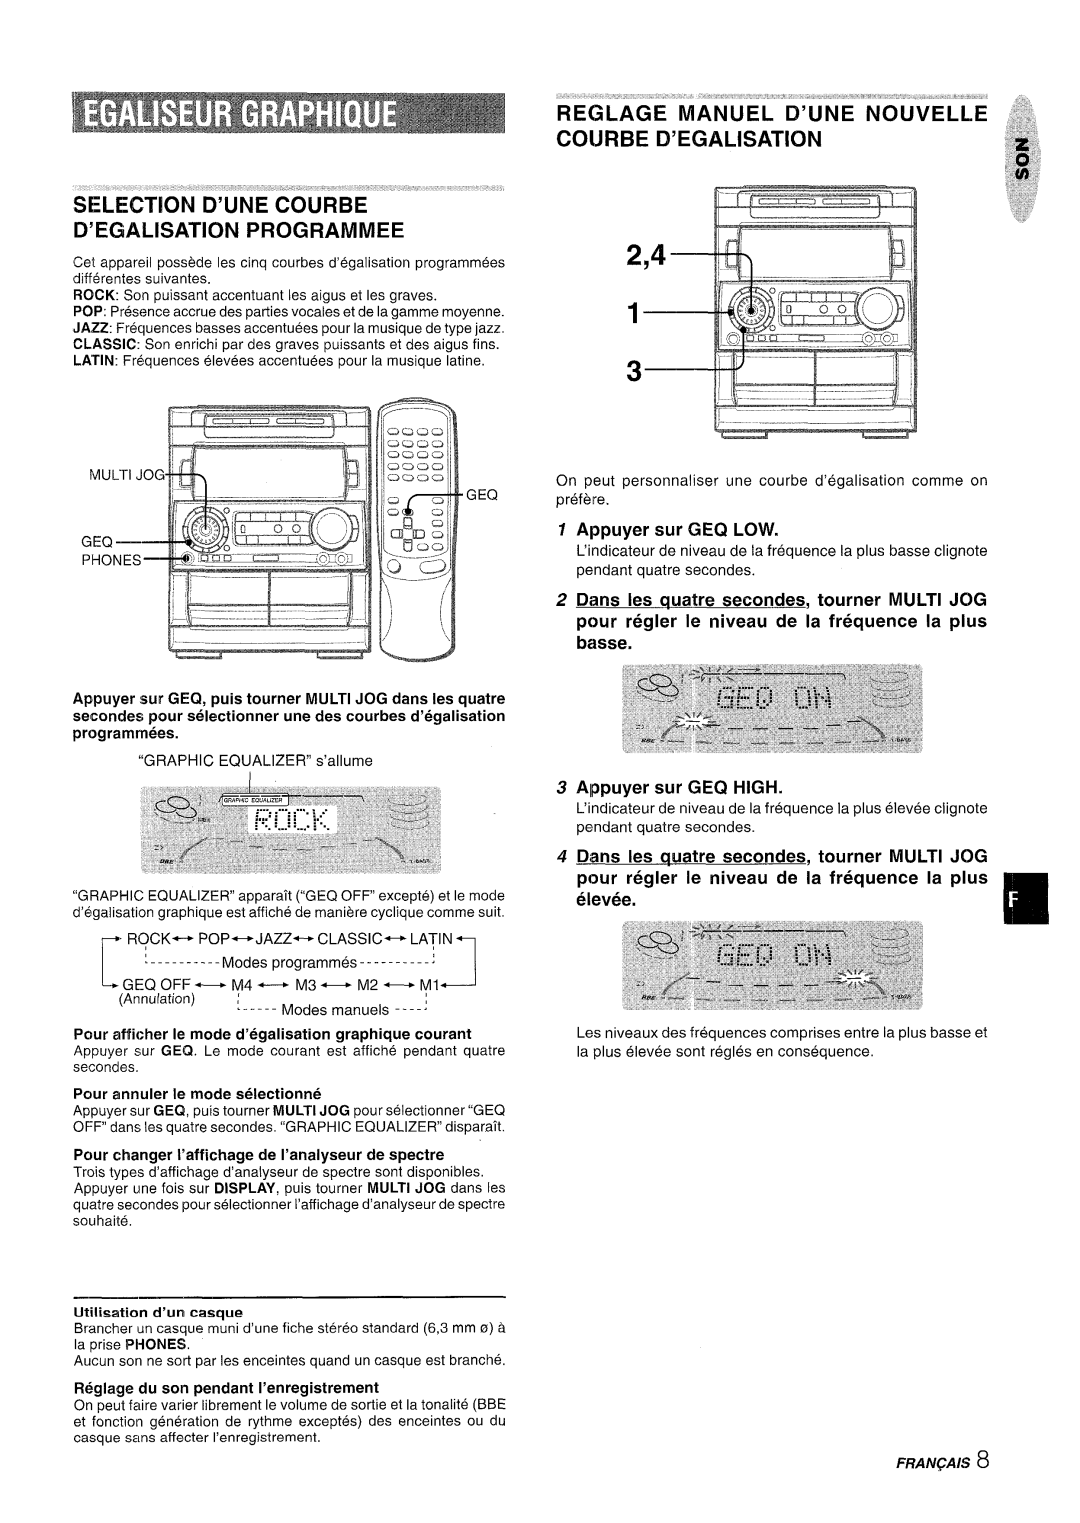 Aiwa NSX-A909 manual Selection D’Une Courbe D’Egalisation Programmed, Appuyer sur 3EQ LOW, Alppuyer sur GEQ HIGH, Fran~Ais 